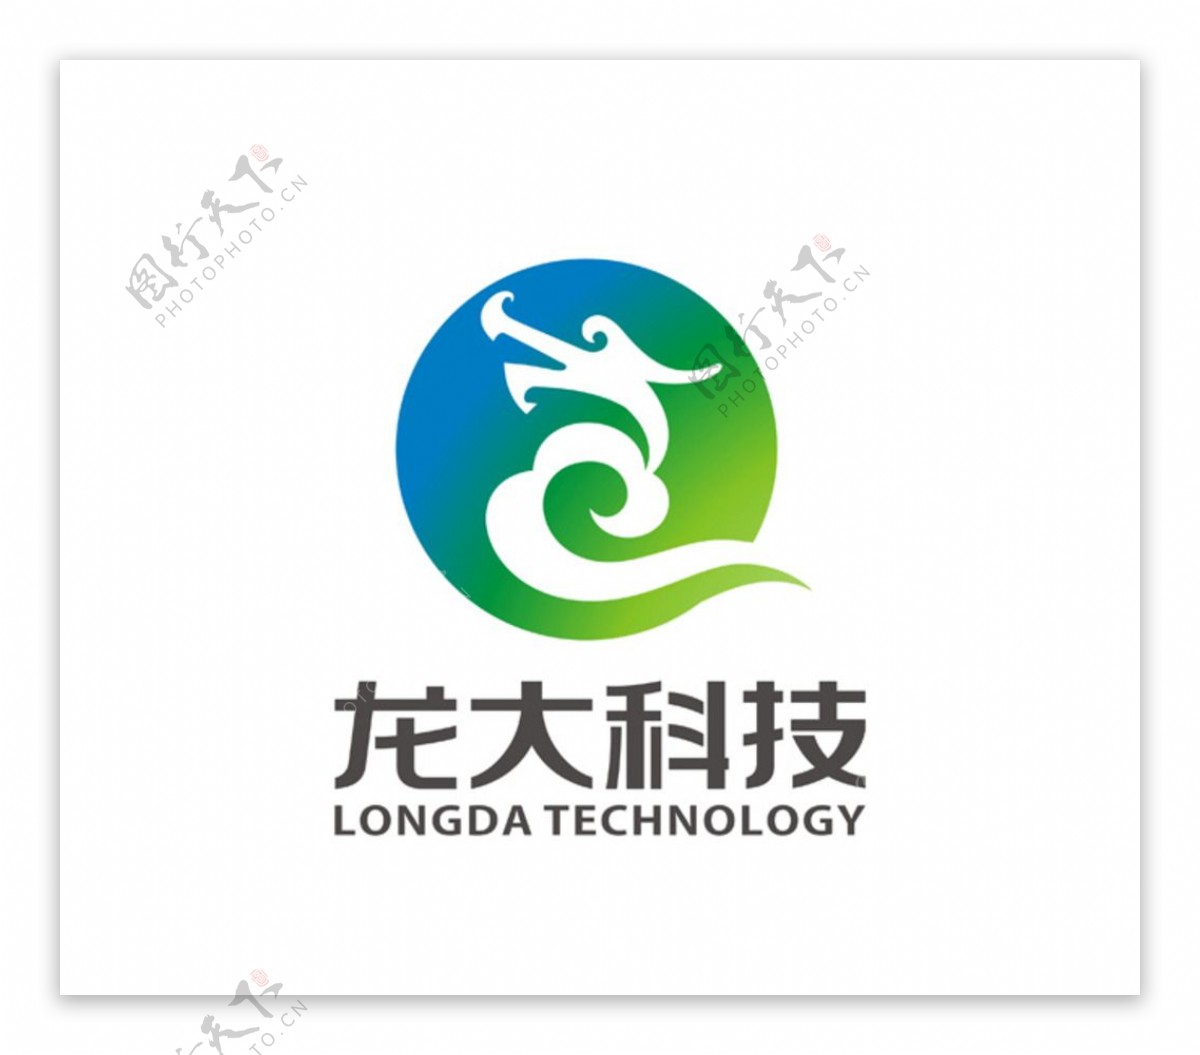 龙大科技标识设计重庆华龙网LO